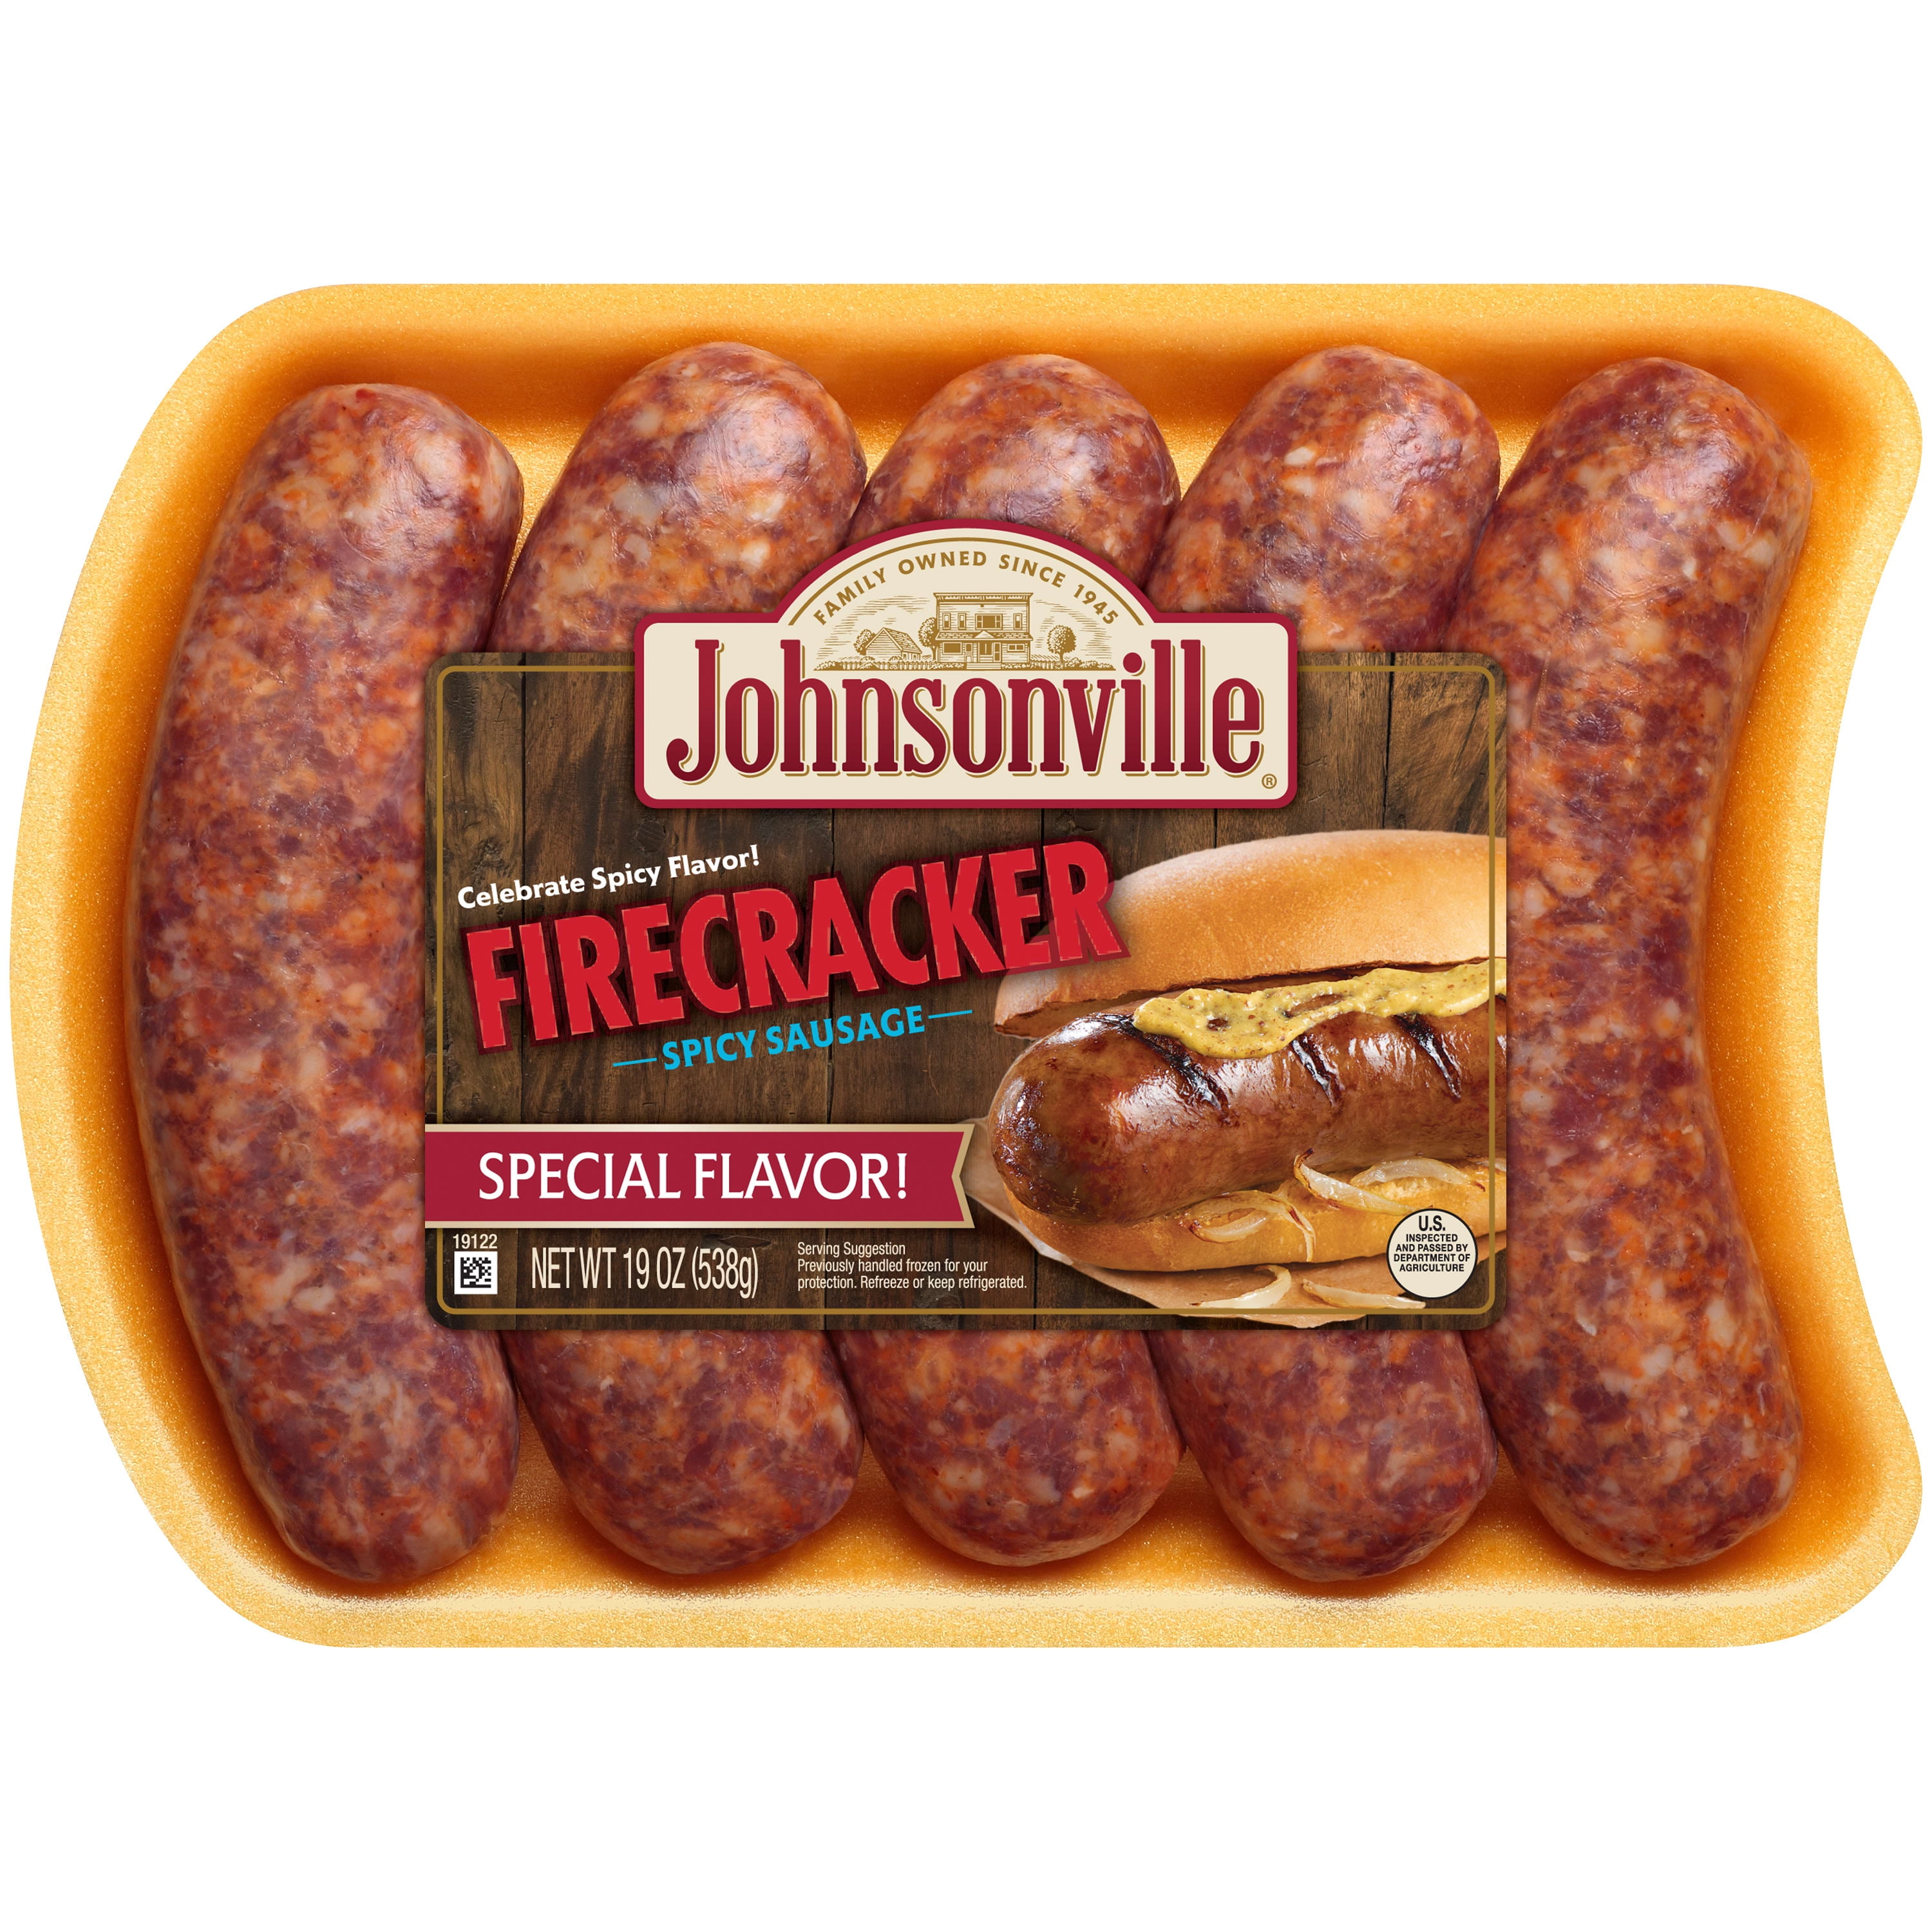 Johnsonville Brat Griller - BBQ Basket for 5 Sausage Links